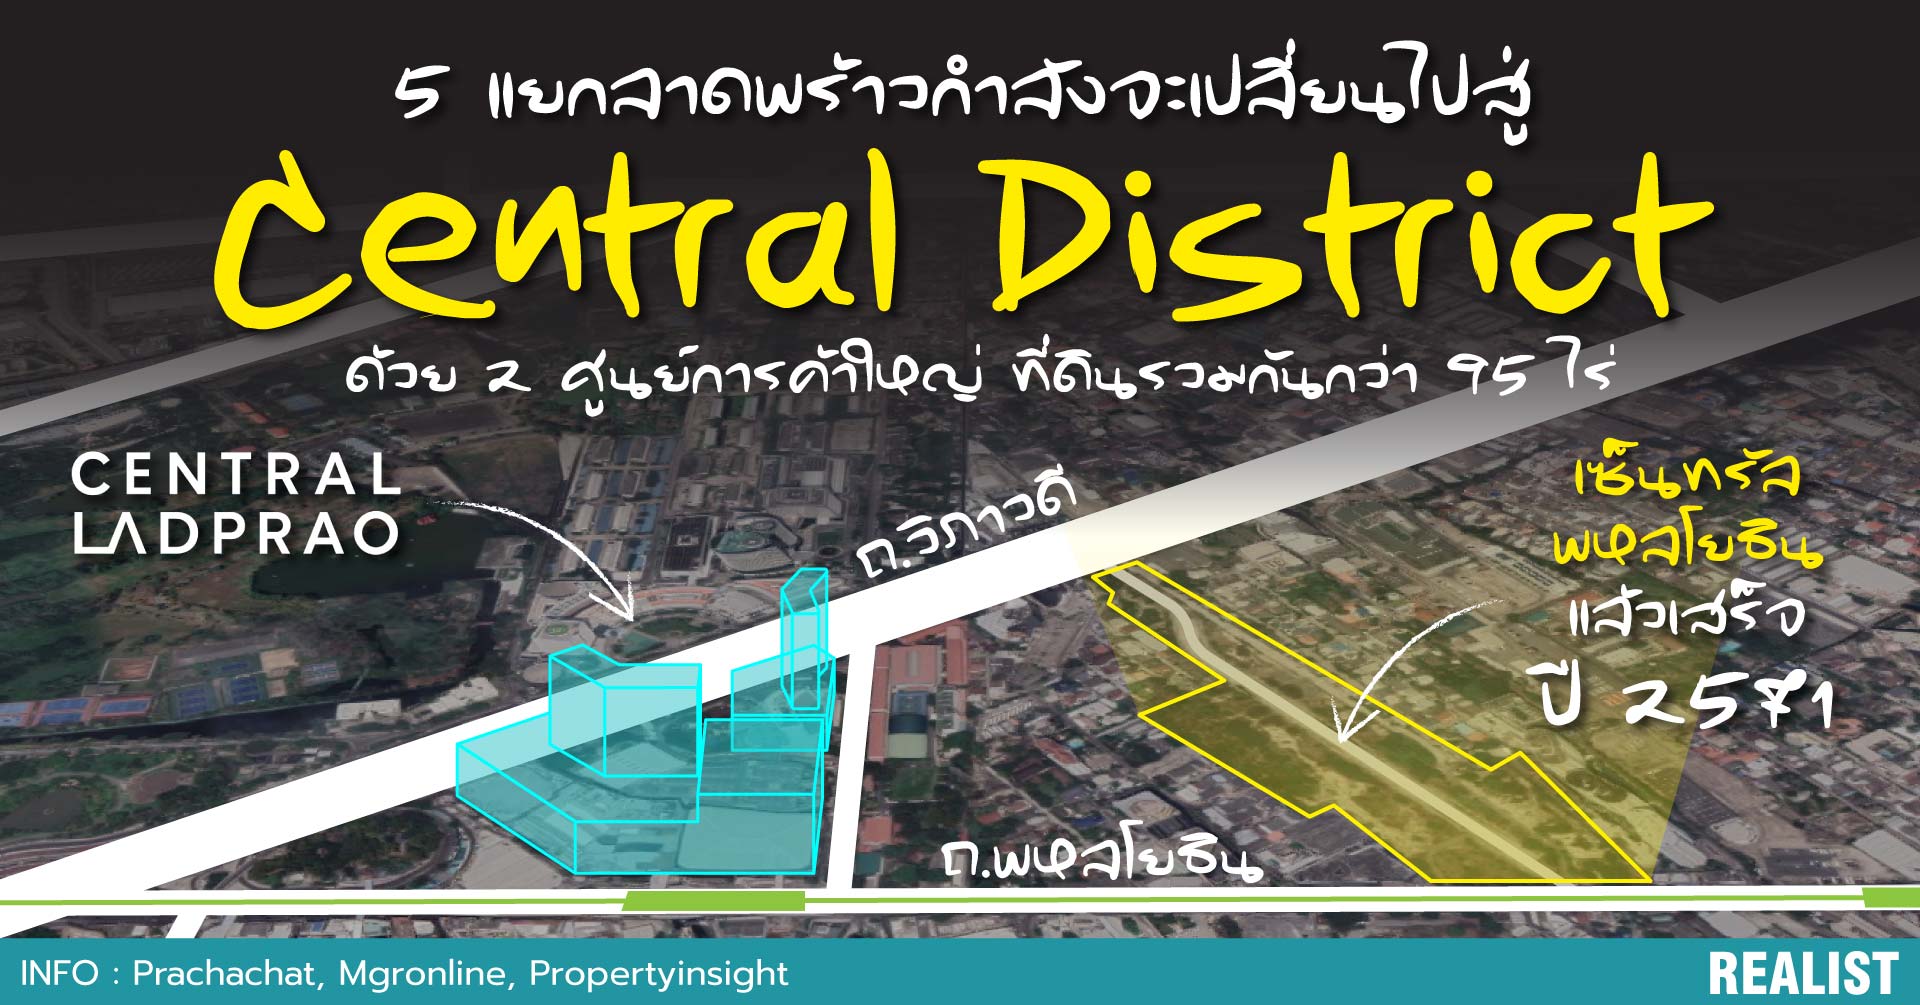 5 แยกลาดพร้าวกำลังจะเปลี่ยนไปสู่ Central District ด้วย 2 โครงการใหญ่  ที่ดินรวมกันกว่า 95 ไร่